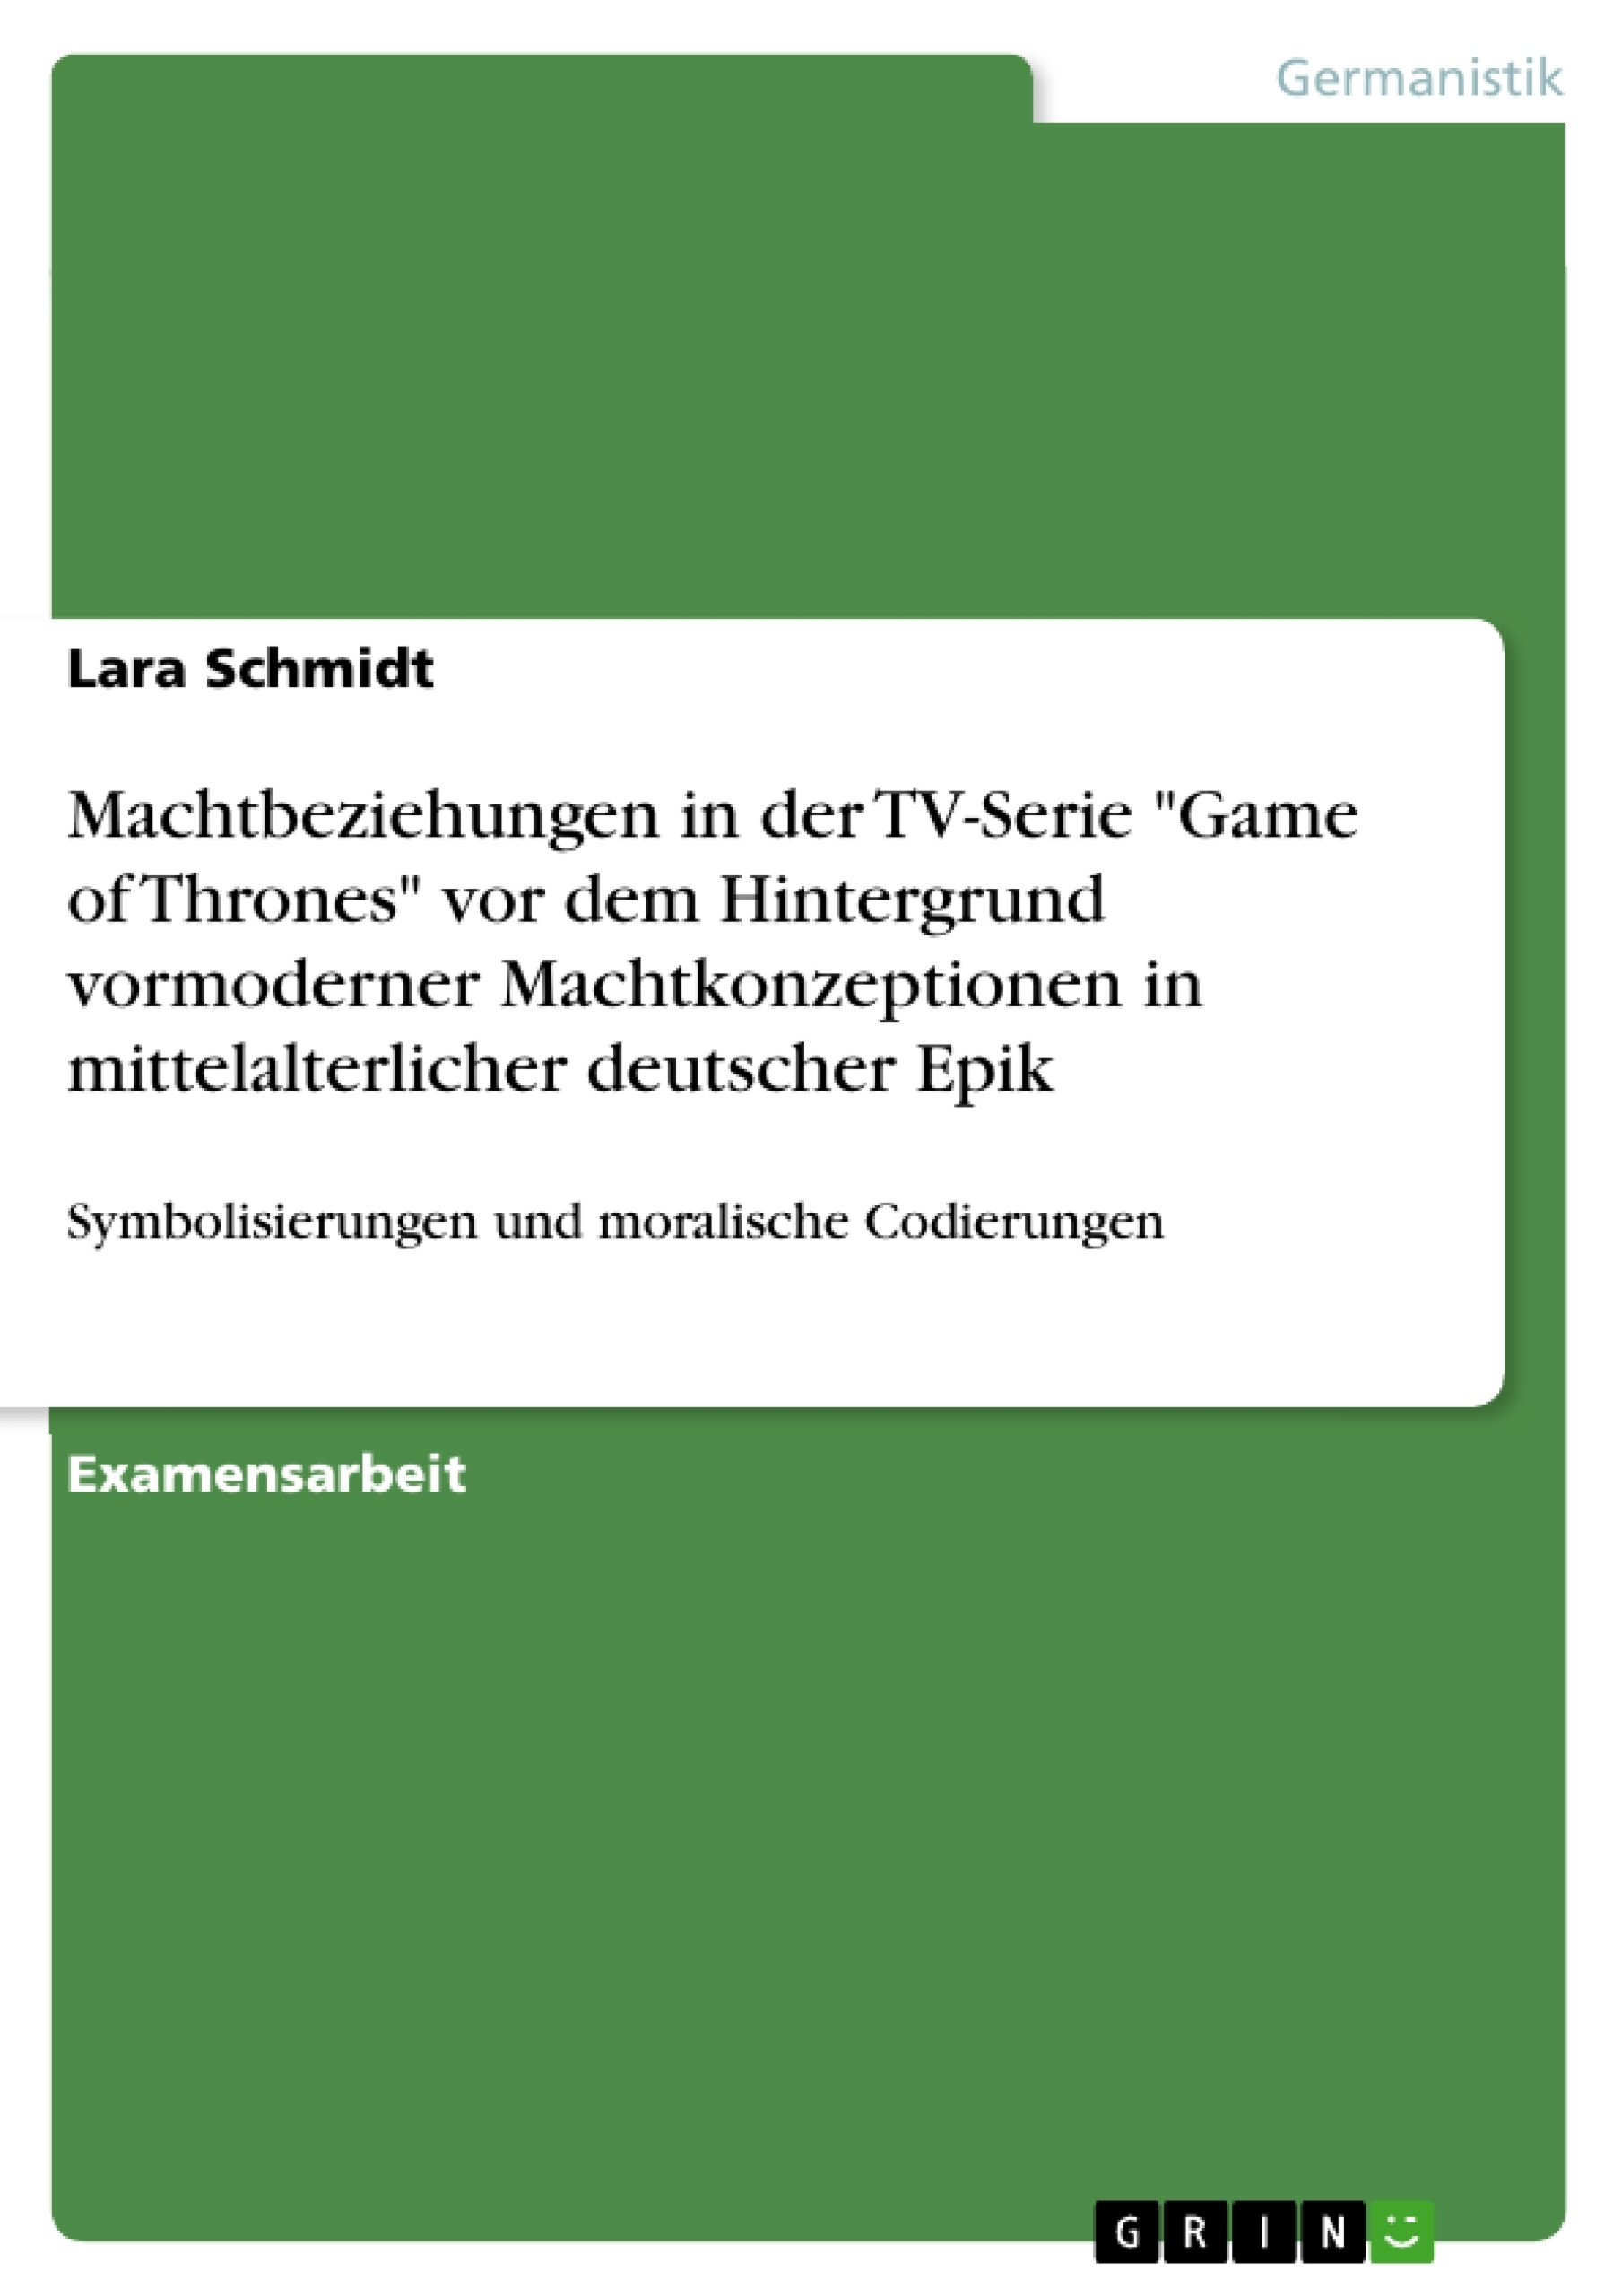 Title: Machtbeziehungen in der TV-Serie "Game of Thrones" vor dem Hintergrund vormoderner Machtkonzeptionen in mittelalterlicher deutscher Epik